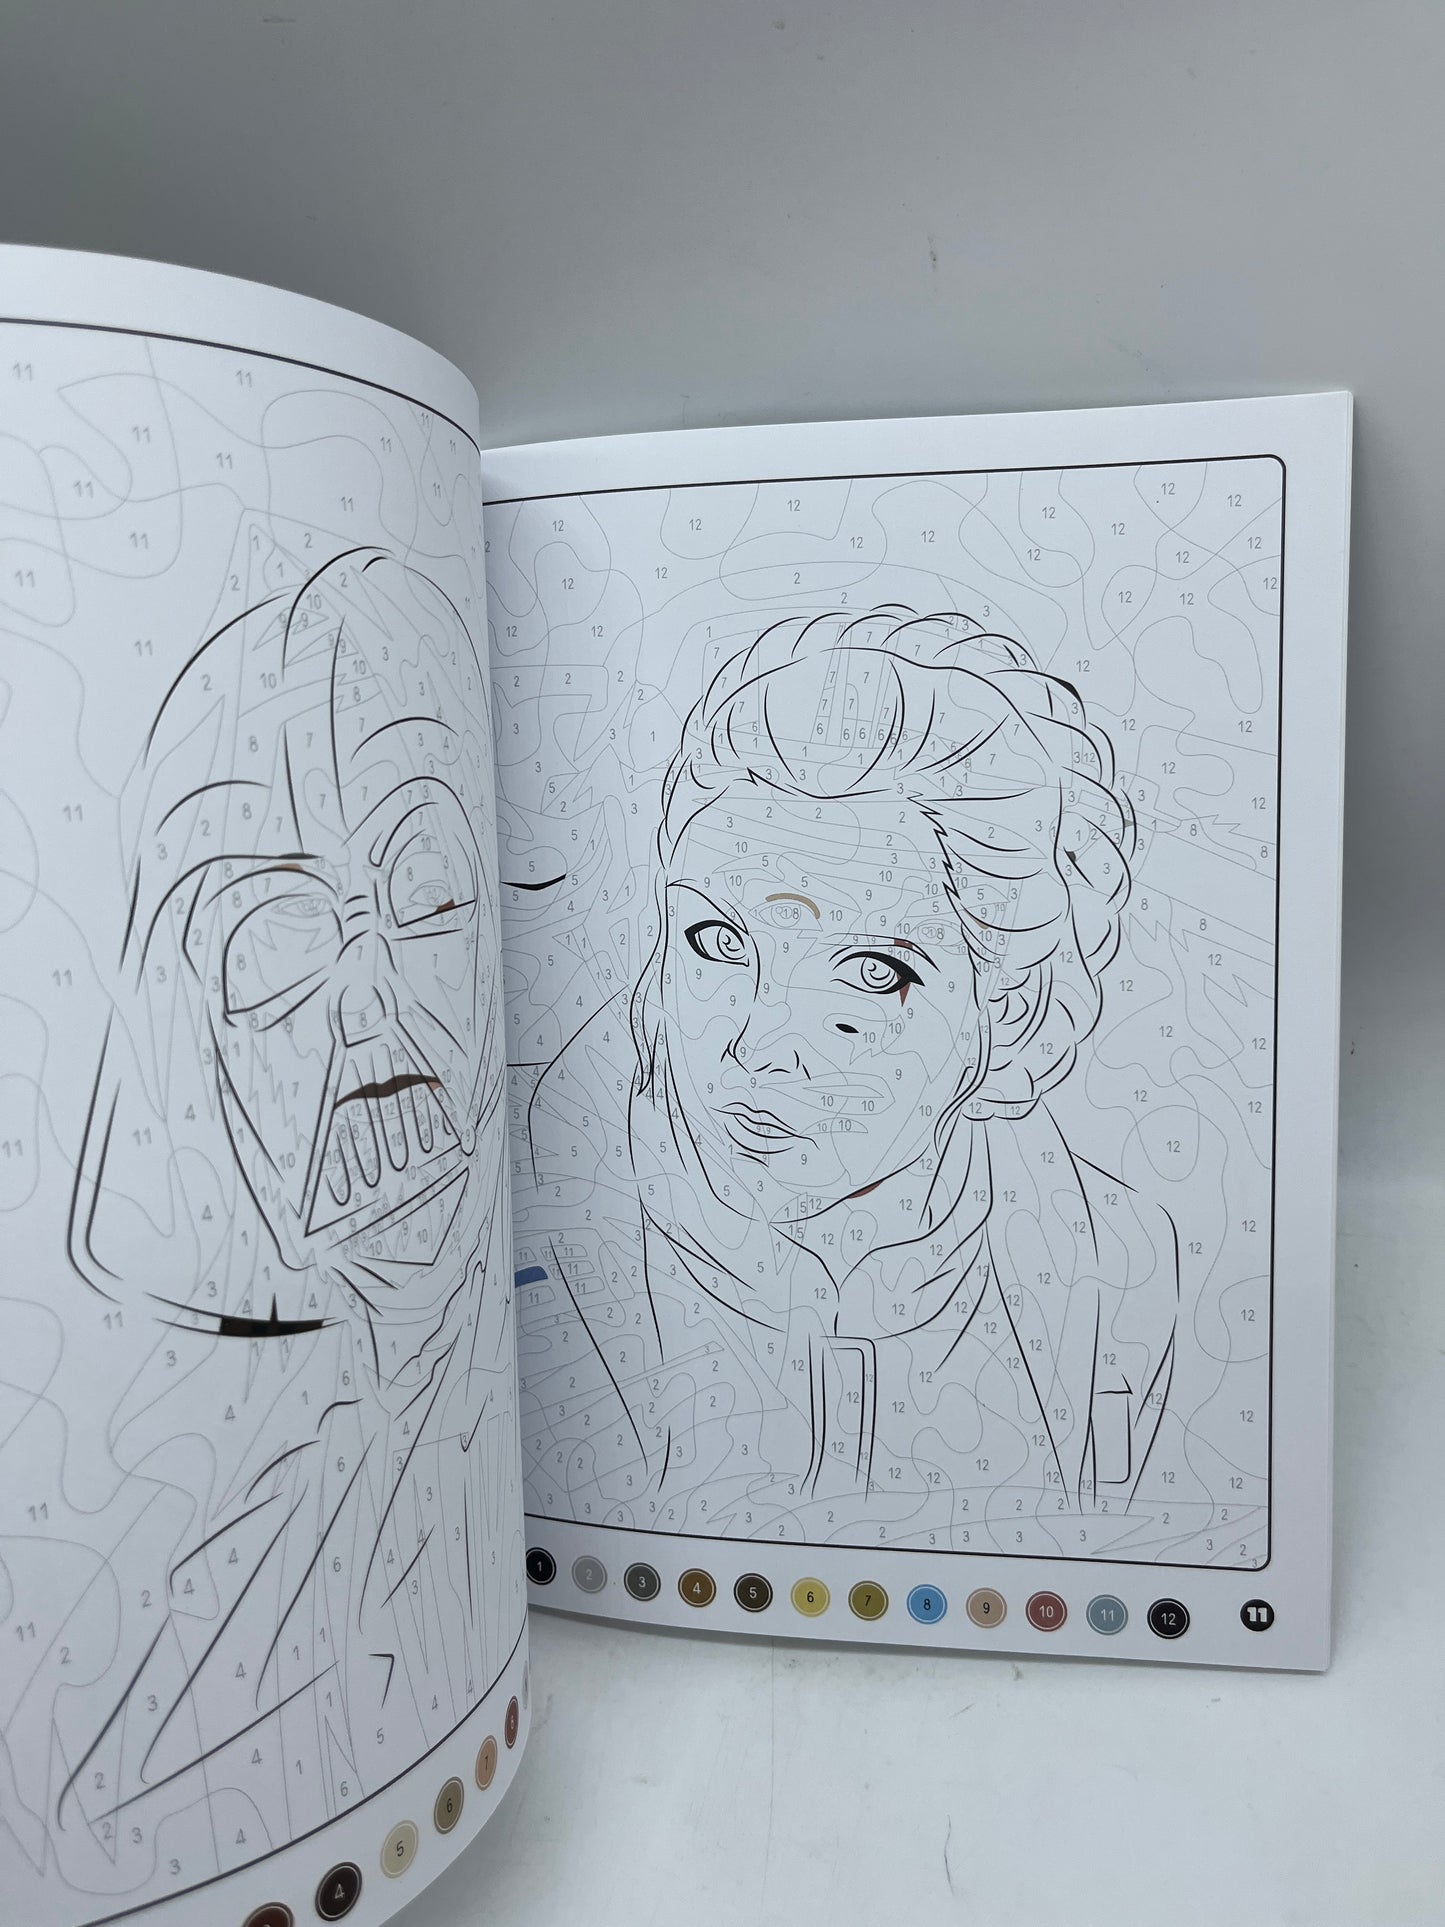 Livre d’activités les ateliers Coloriages mystères à colorier spécial Star Wars Neuf